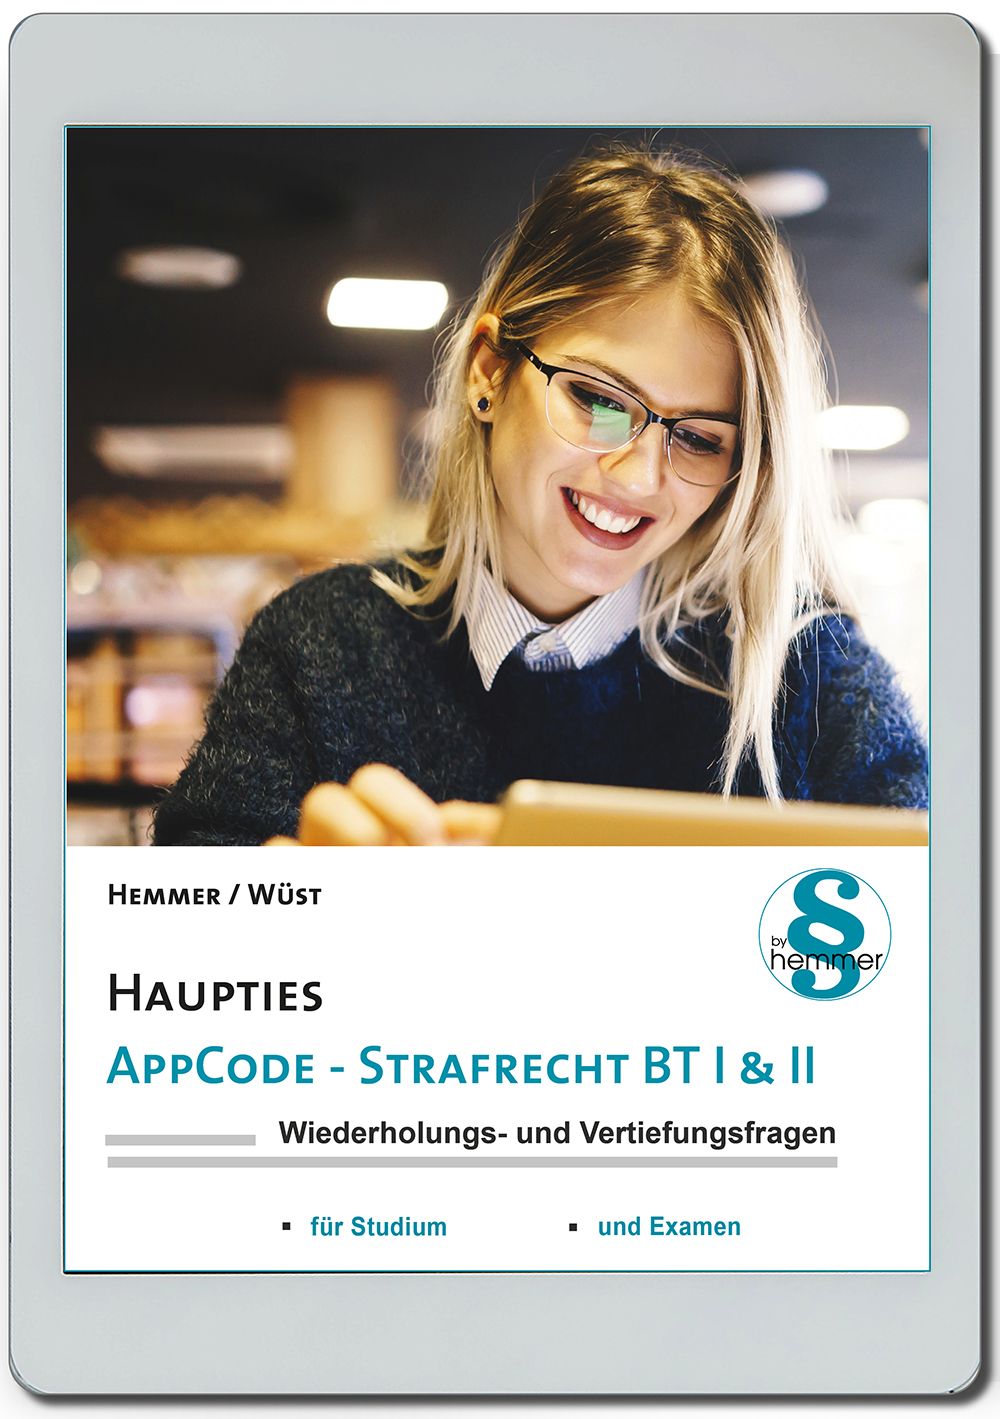 AppCode - haupties - Strafrecht BT I & II